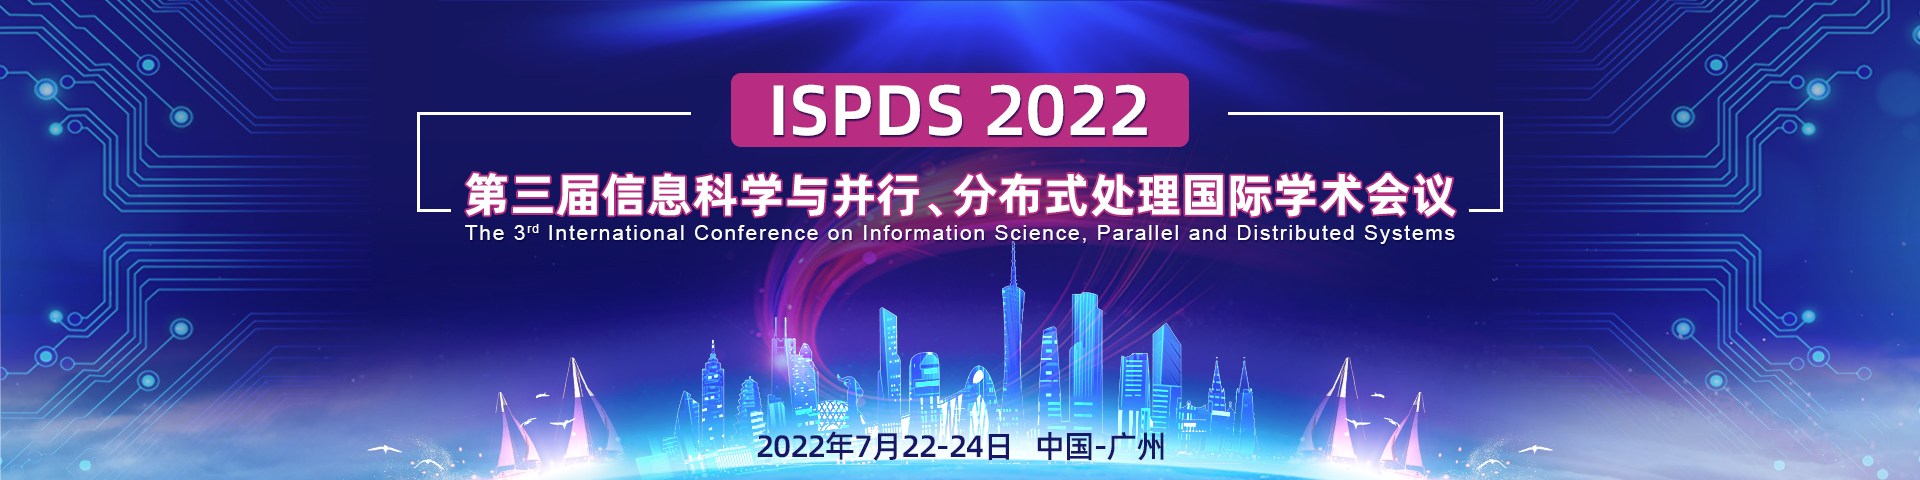 7月广州ISPDS-2022-艾思平台1920x480-陈军-20211111.jpg